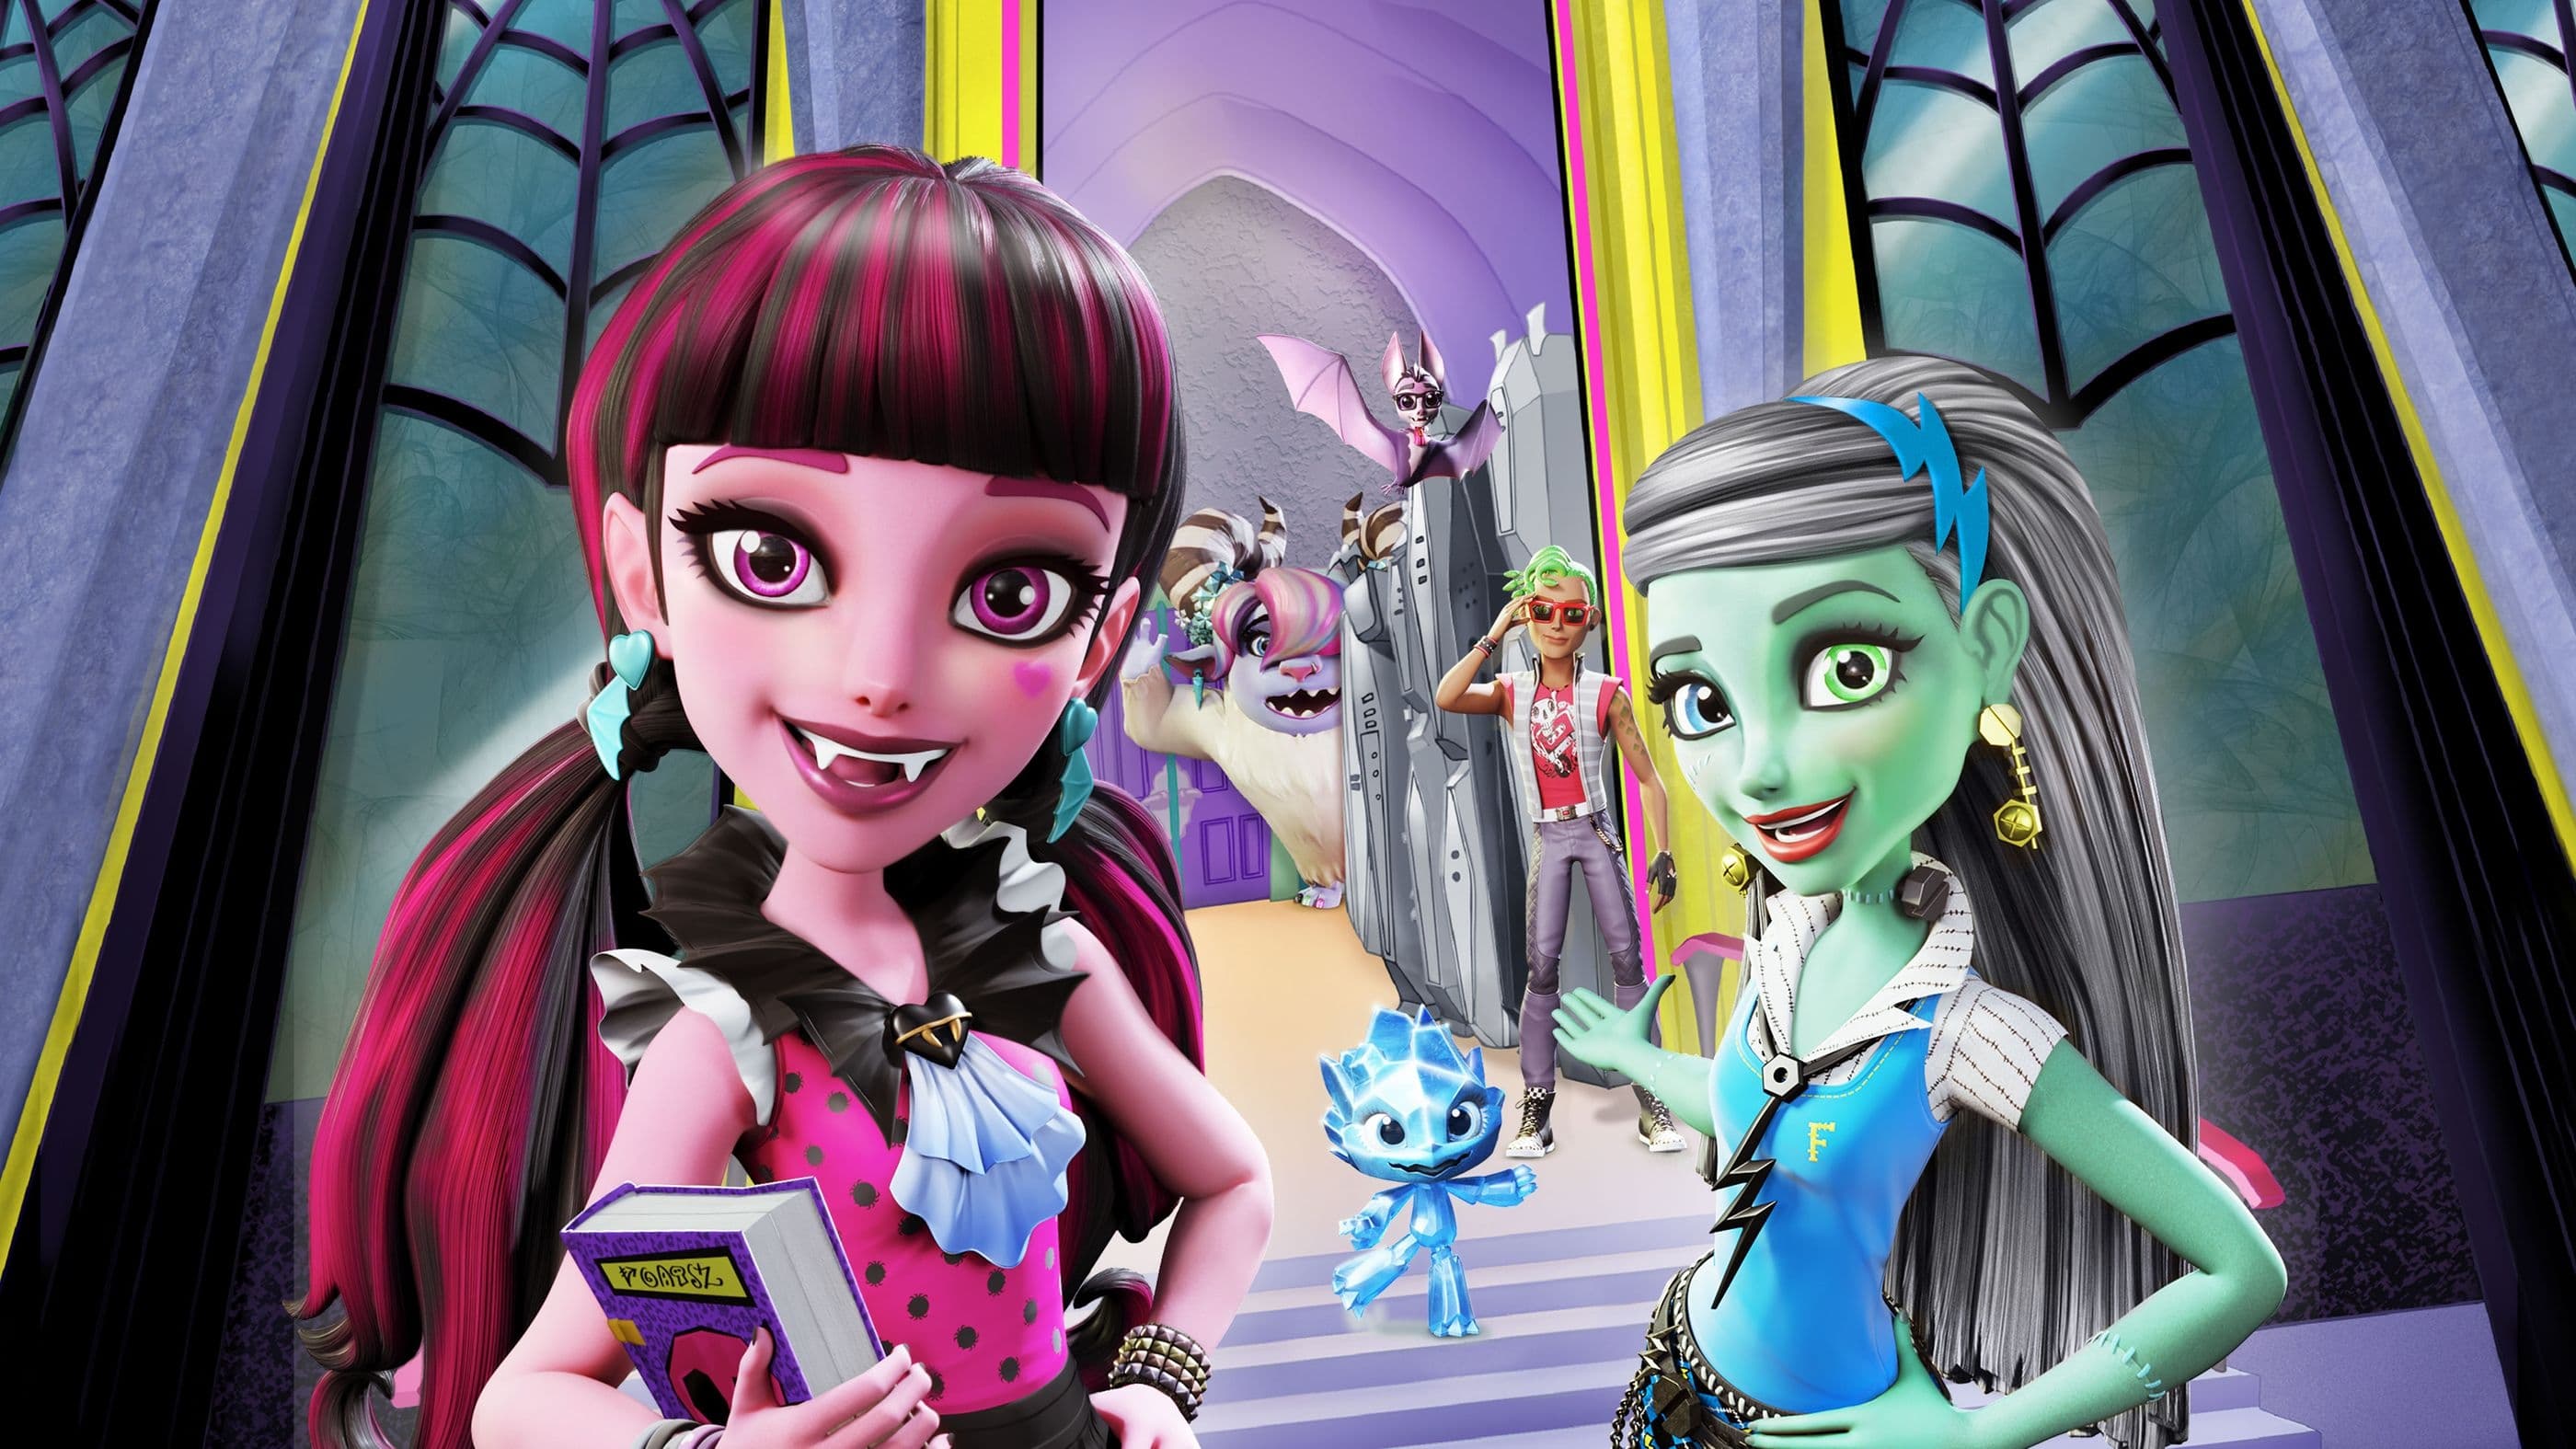 Школа монстрів: Вітаємо у Monster High